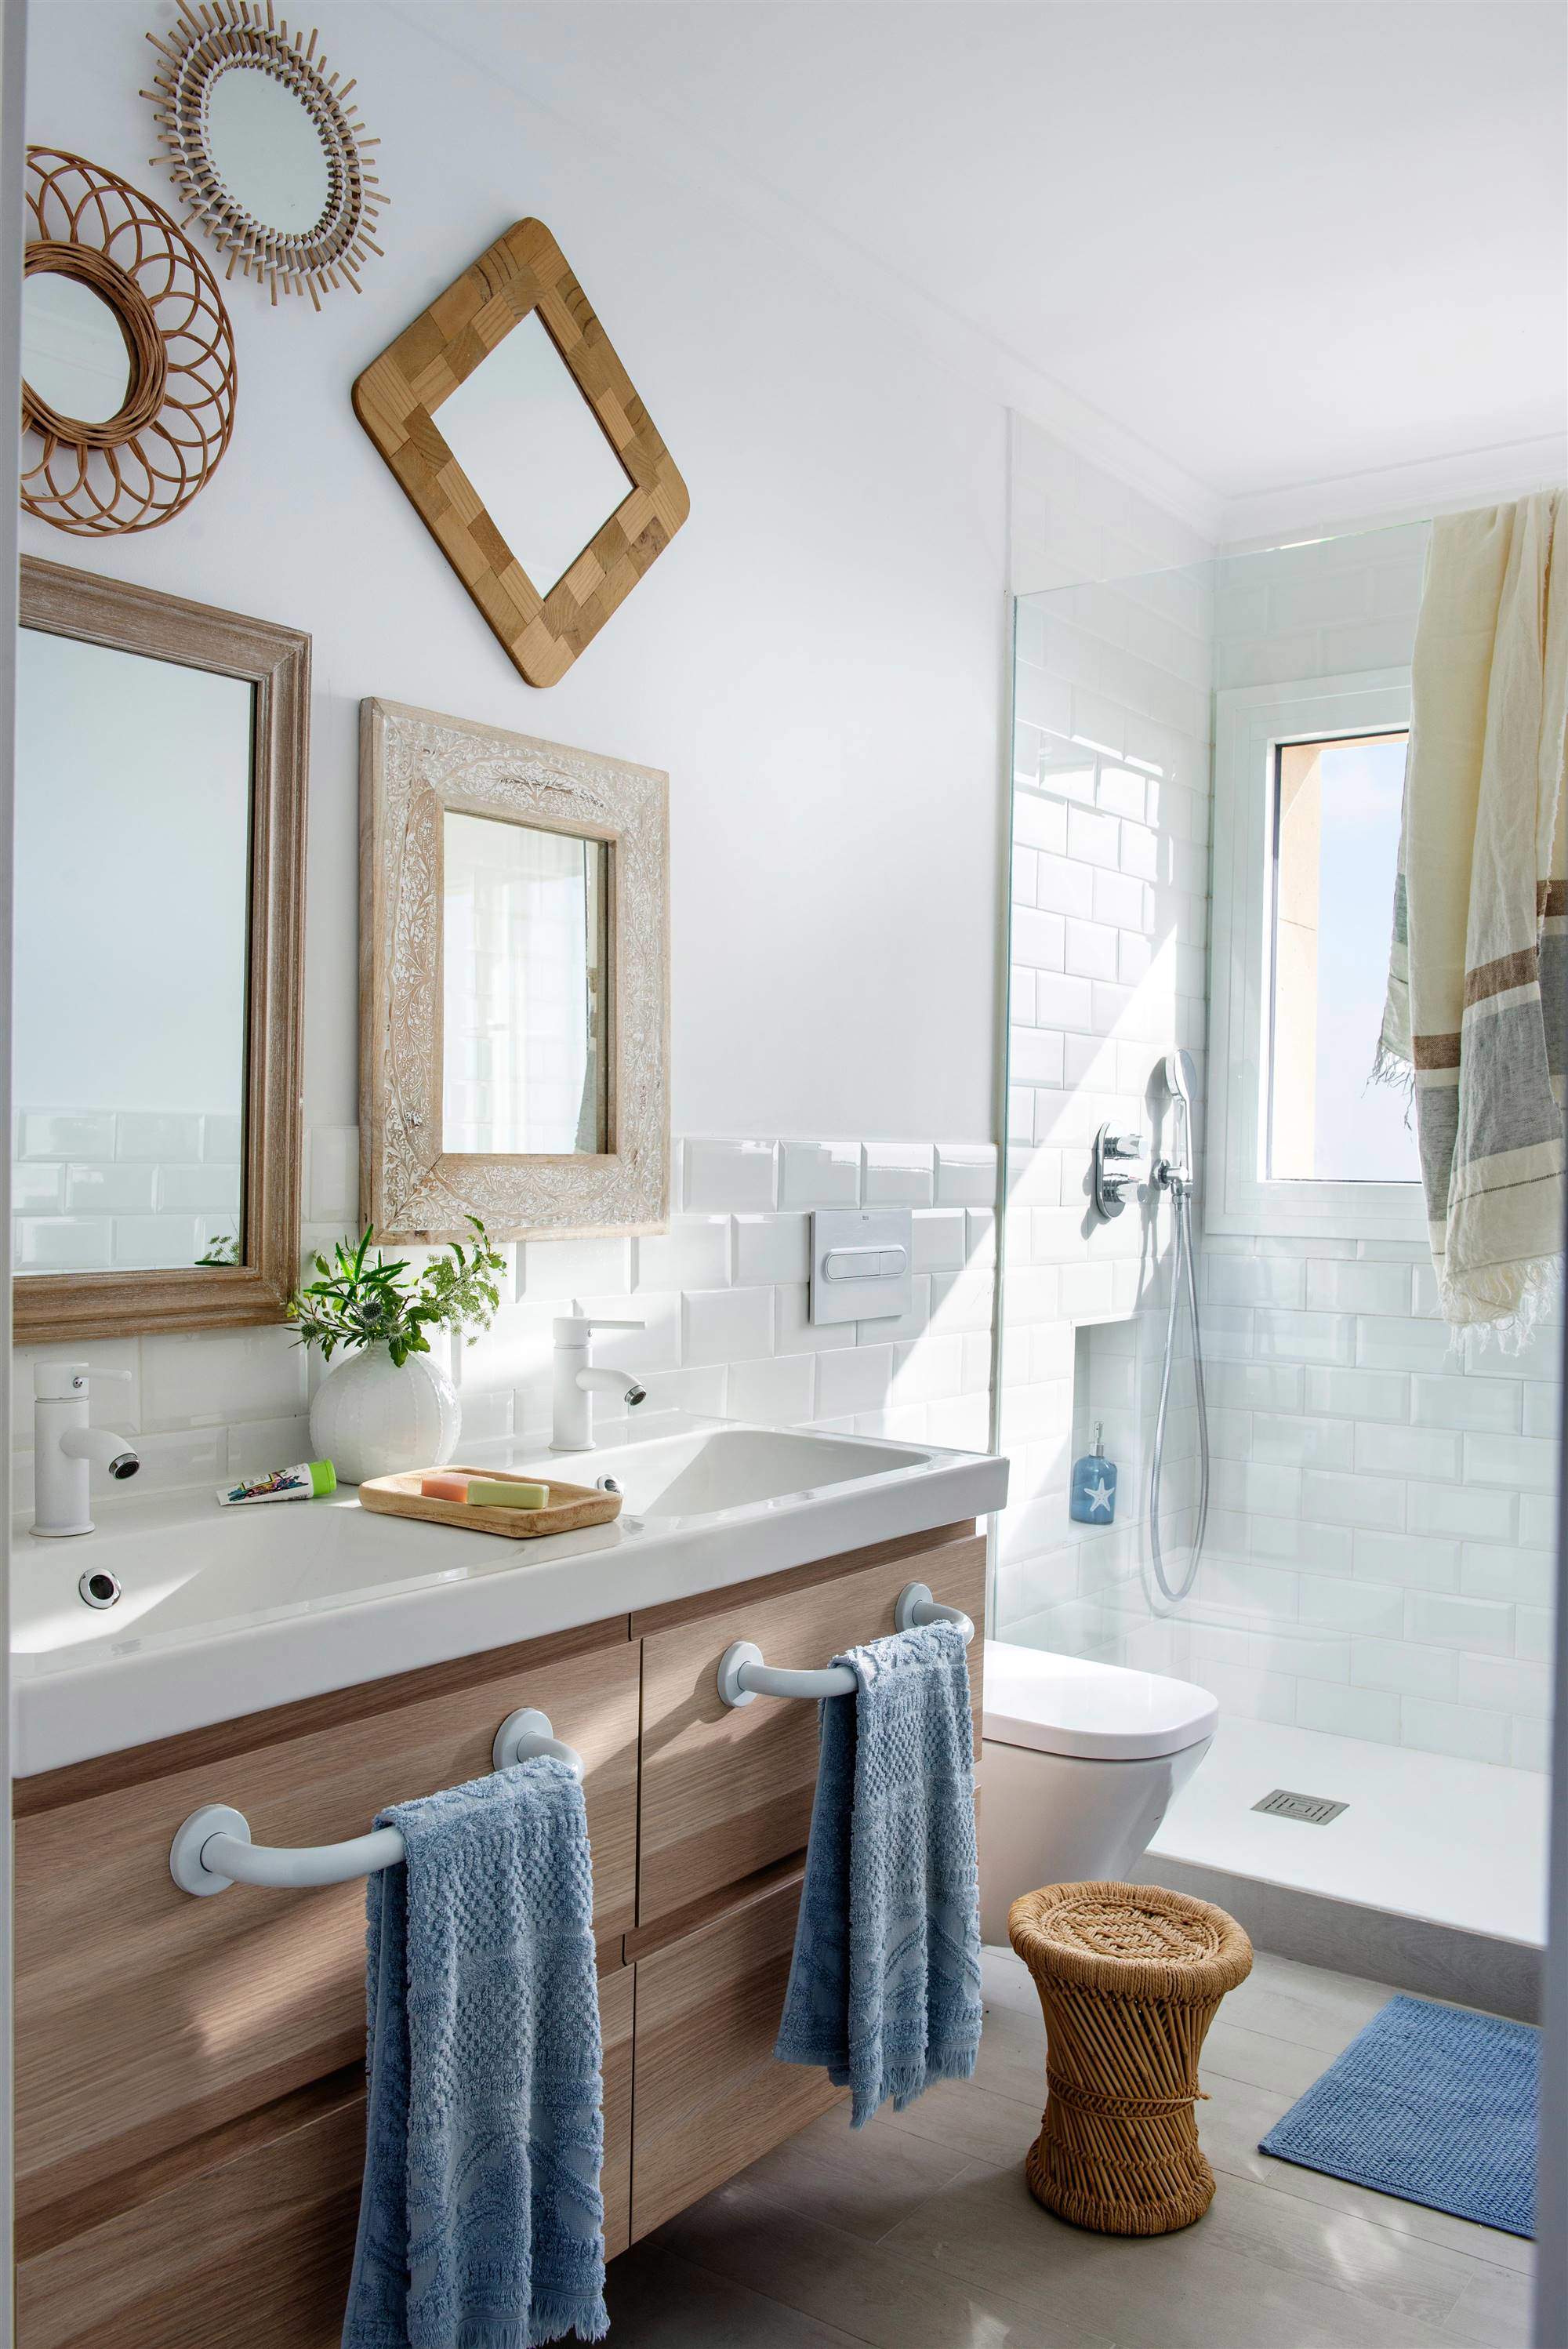 Pared del baño decorada con espejos de formas y tamaños diferentes.